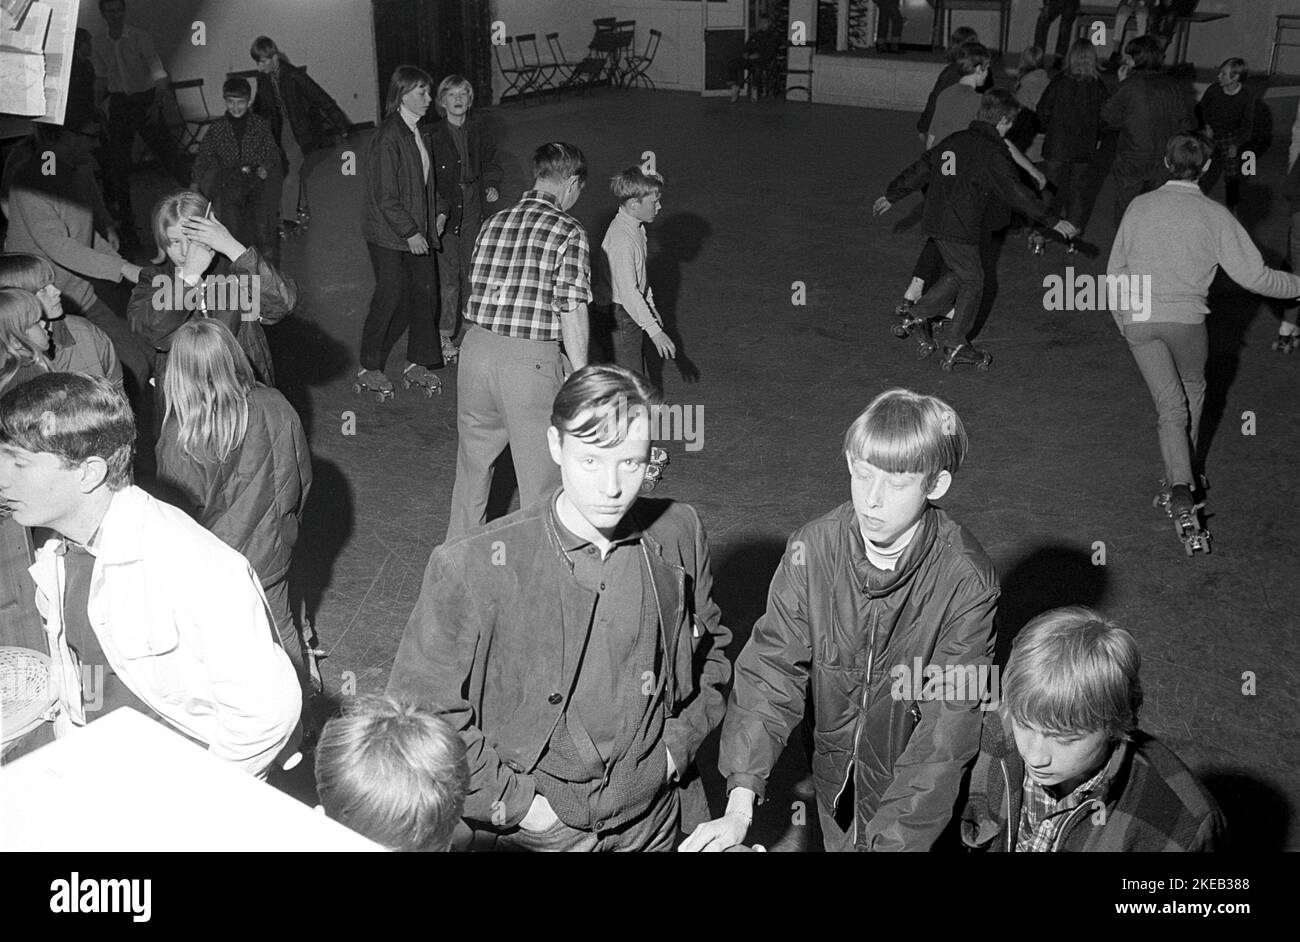 Roller skate amusant dans le 1960s. Intérieur d'une discothèque avec patinage à roulettes. Le patinage à roulettes a commencé à avoir tendance à cette époque et tout au long de l'année 1970s, lorsque le patinage à roulettes était associé à la musique disco et aux discothèques à roulettes. Un juke-box est visible et joue la discothèque facilement danceble. Suède 1967 Conard réf. 5419 Banque D'Images